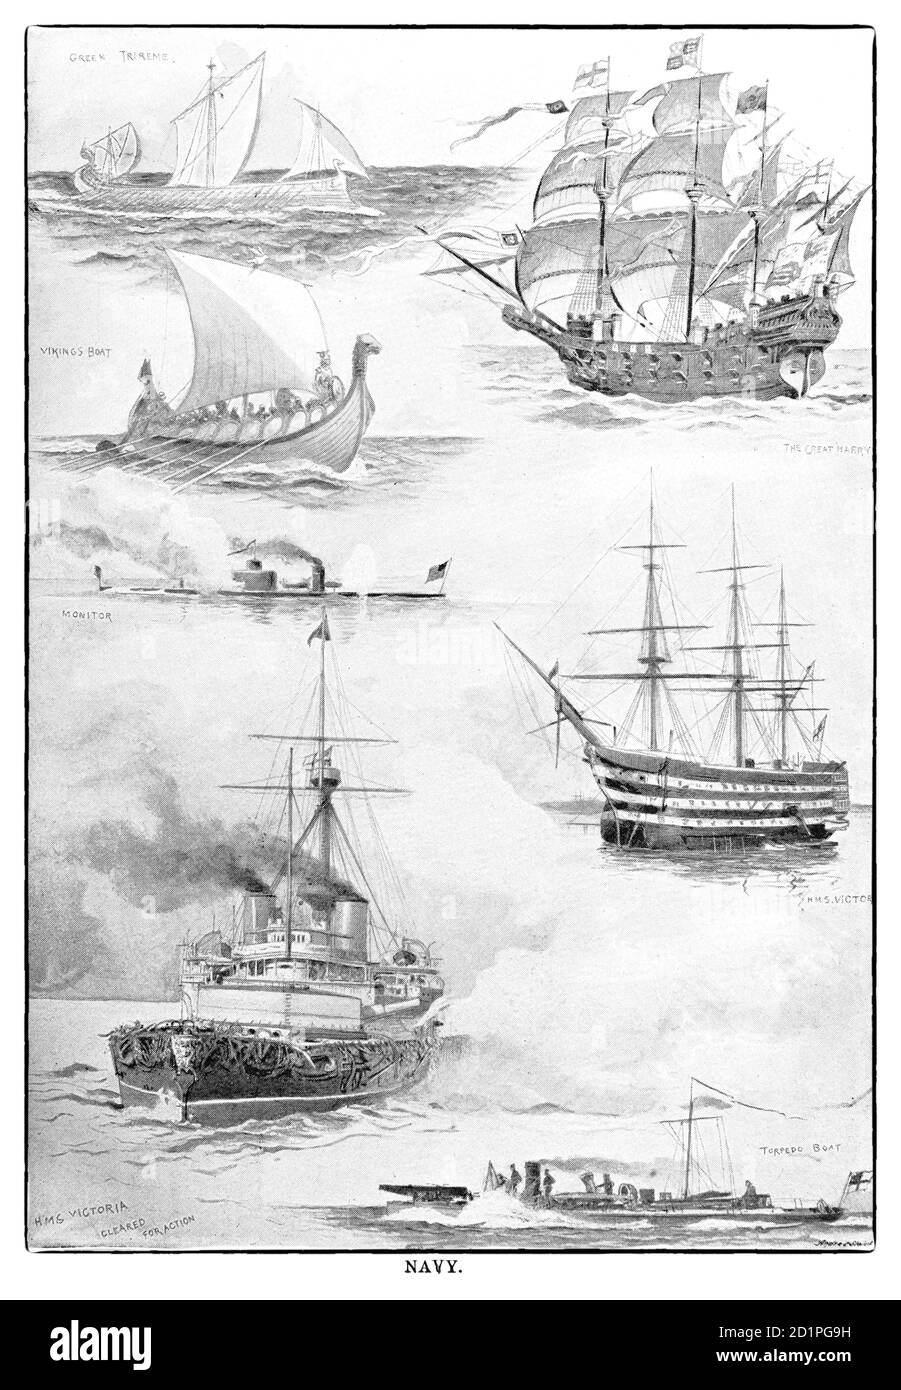 Carte de la fin du XIXe siècle illustrant divers navires de guerre, des triremes grecs à partir de 500BCE, jusqu'aux navires revêtus de fer de fer à repasser de la fin du XIXe siècle. Banque D'Images